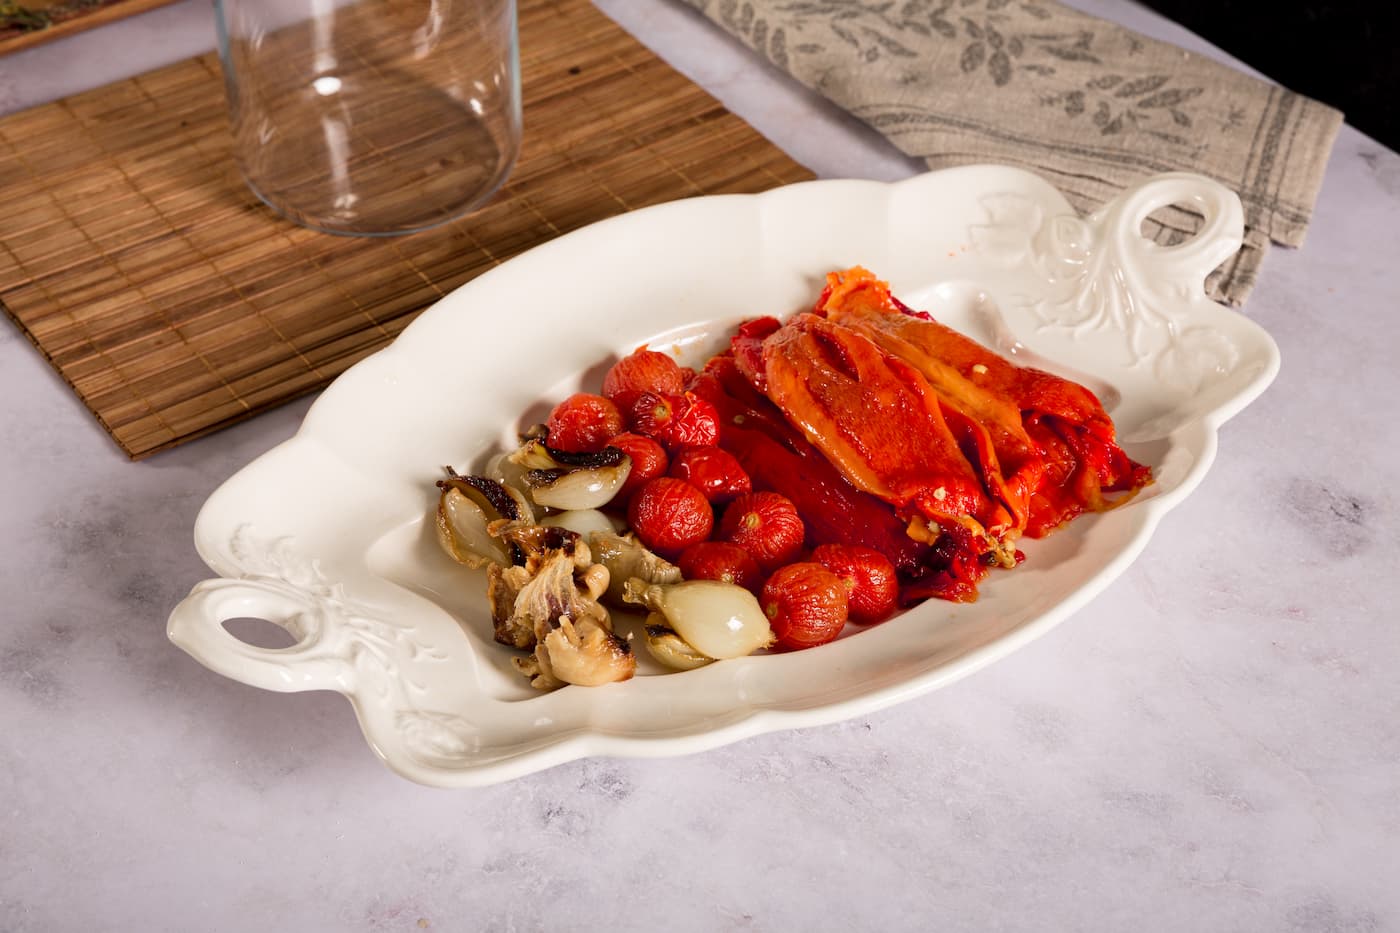 Receta Mezzelune Prosciutto Di Parma y Parmigiano Reggiano con Salsa de Pimientos Asados y Burrata. Paso 2: quitamos la piel a los pimientos y los tomates